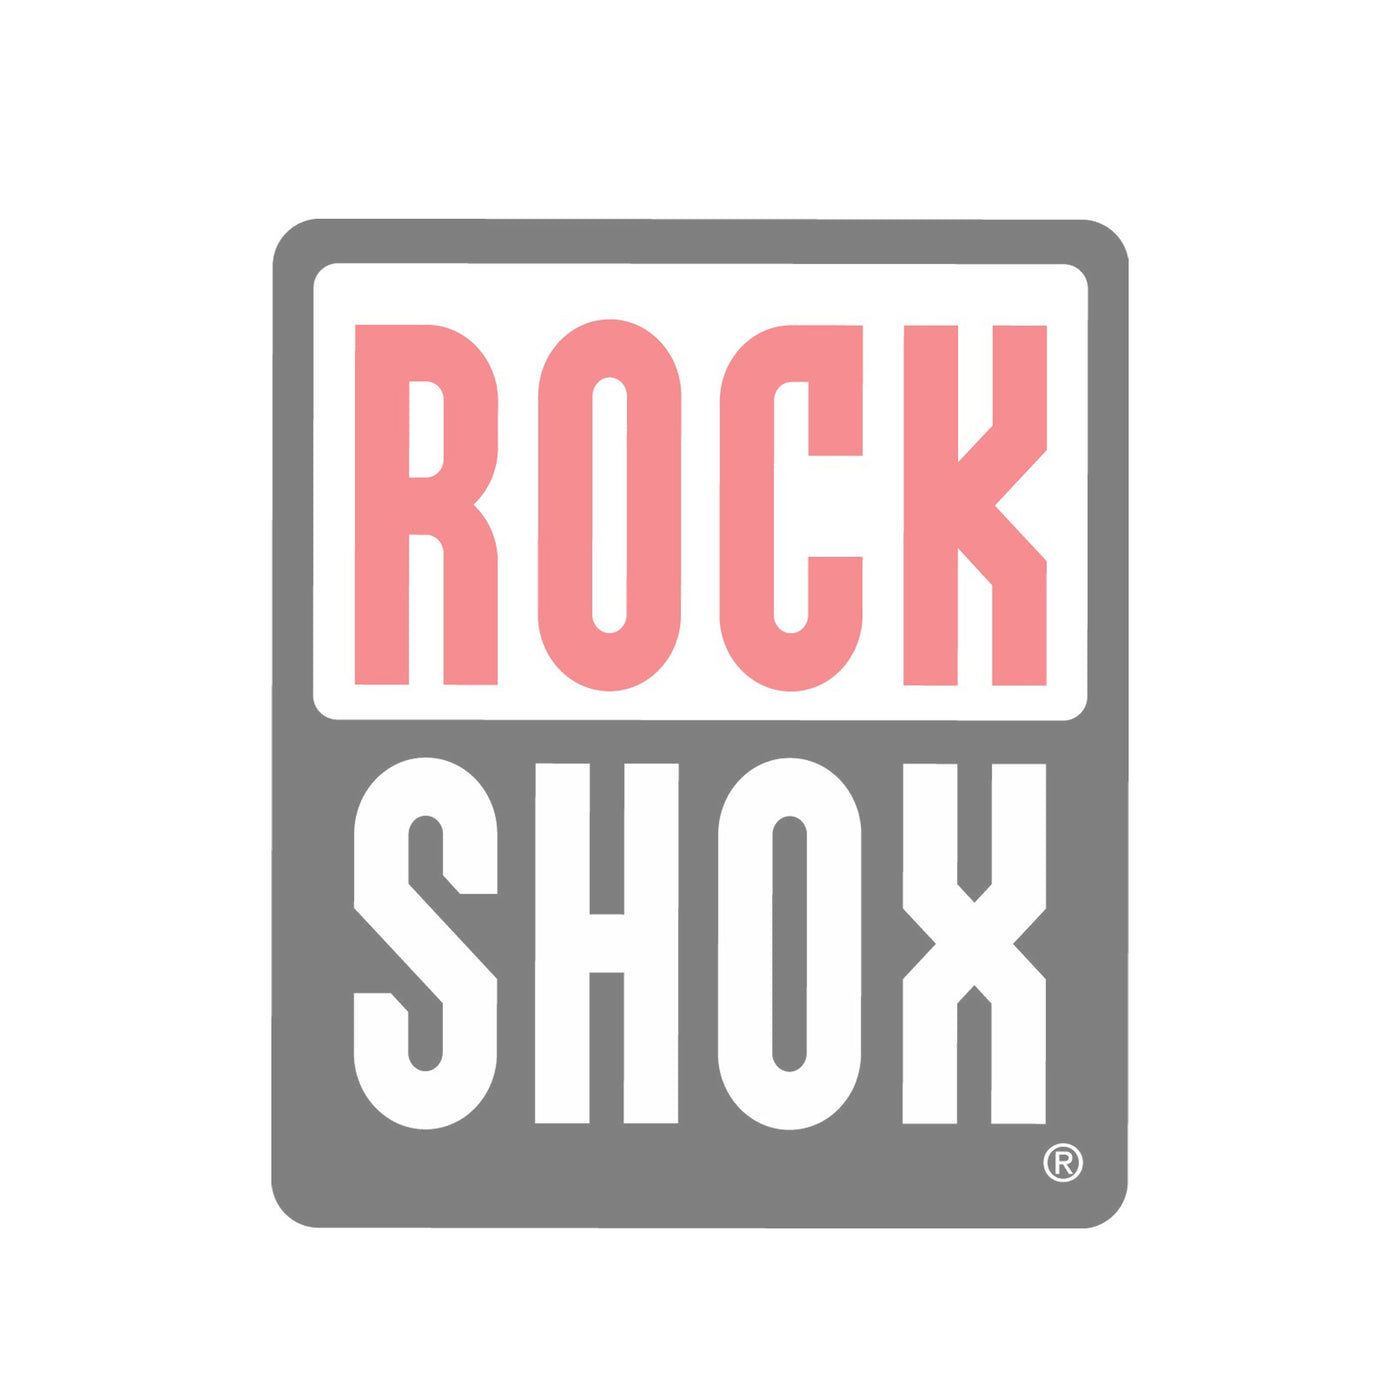 Kits d'entretien ROCKSHOX 200hrs 32mm Stanchion